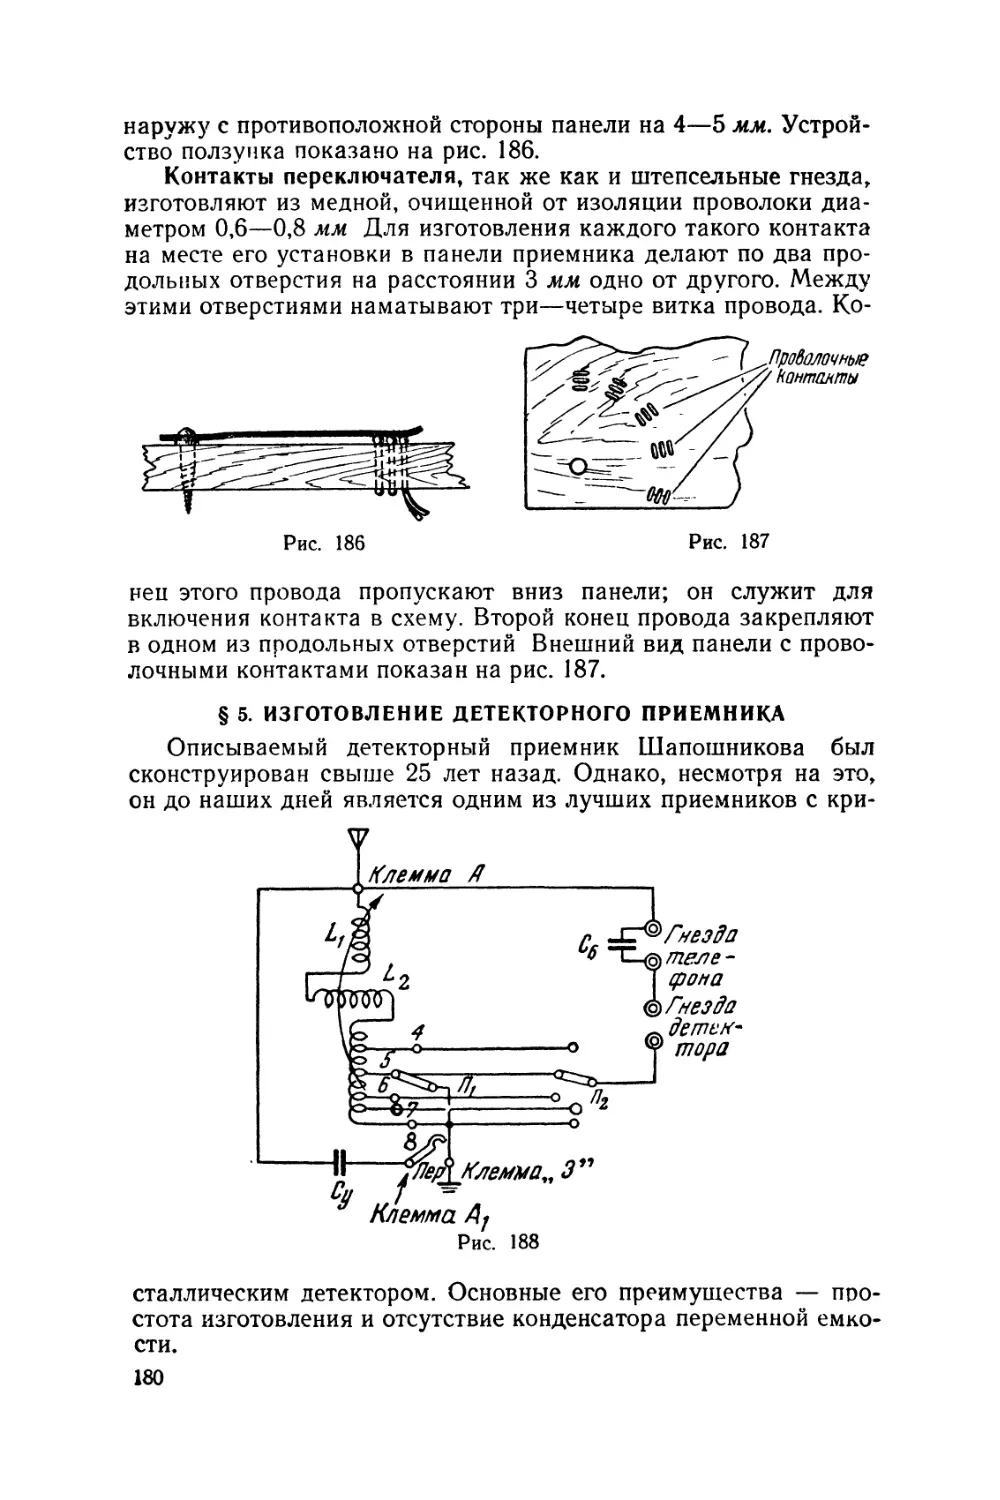 §5 Изготовление детекторного приемника